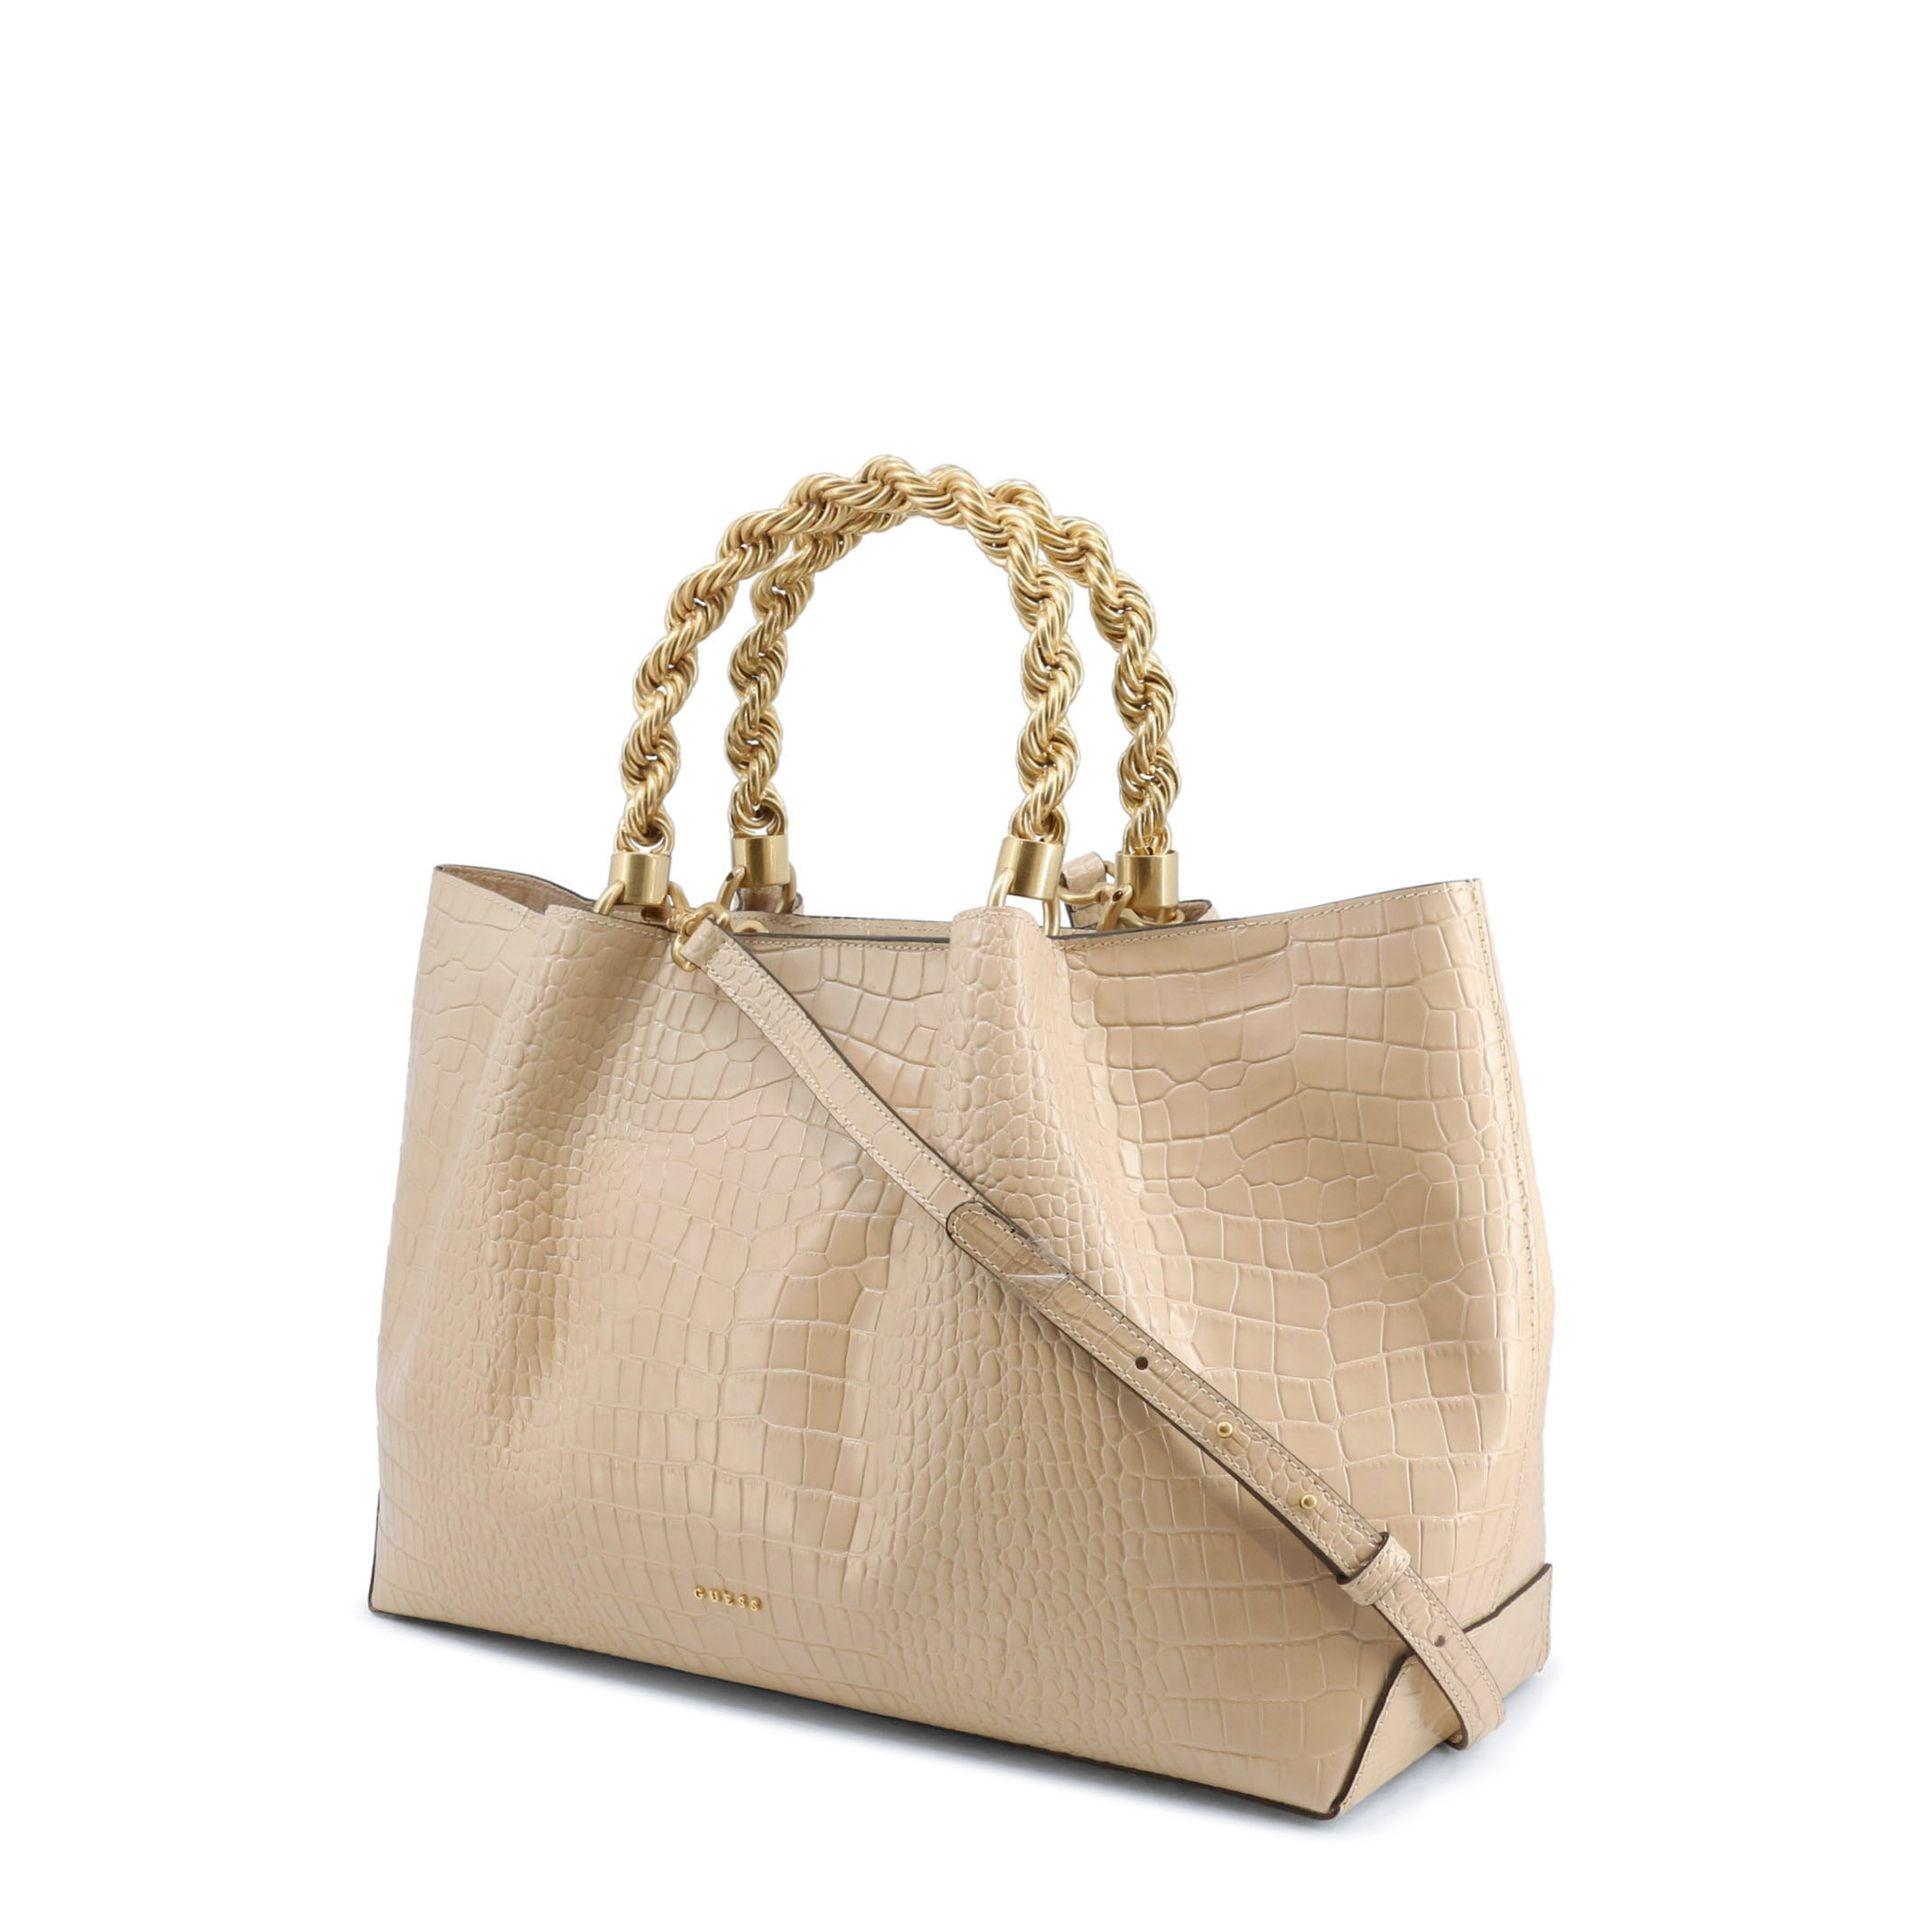 Guess Shopping bags - Women Handbags - Handbag - Guocali